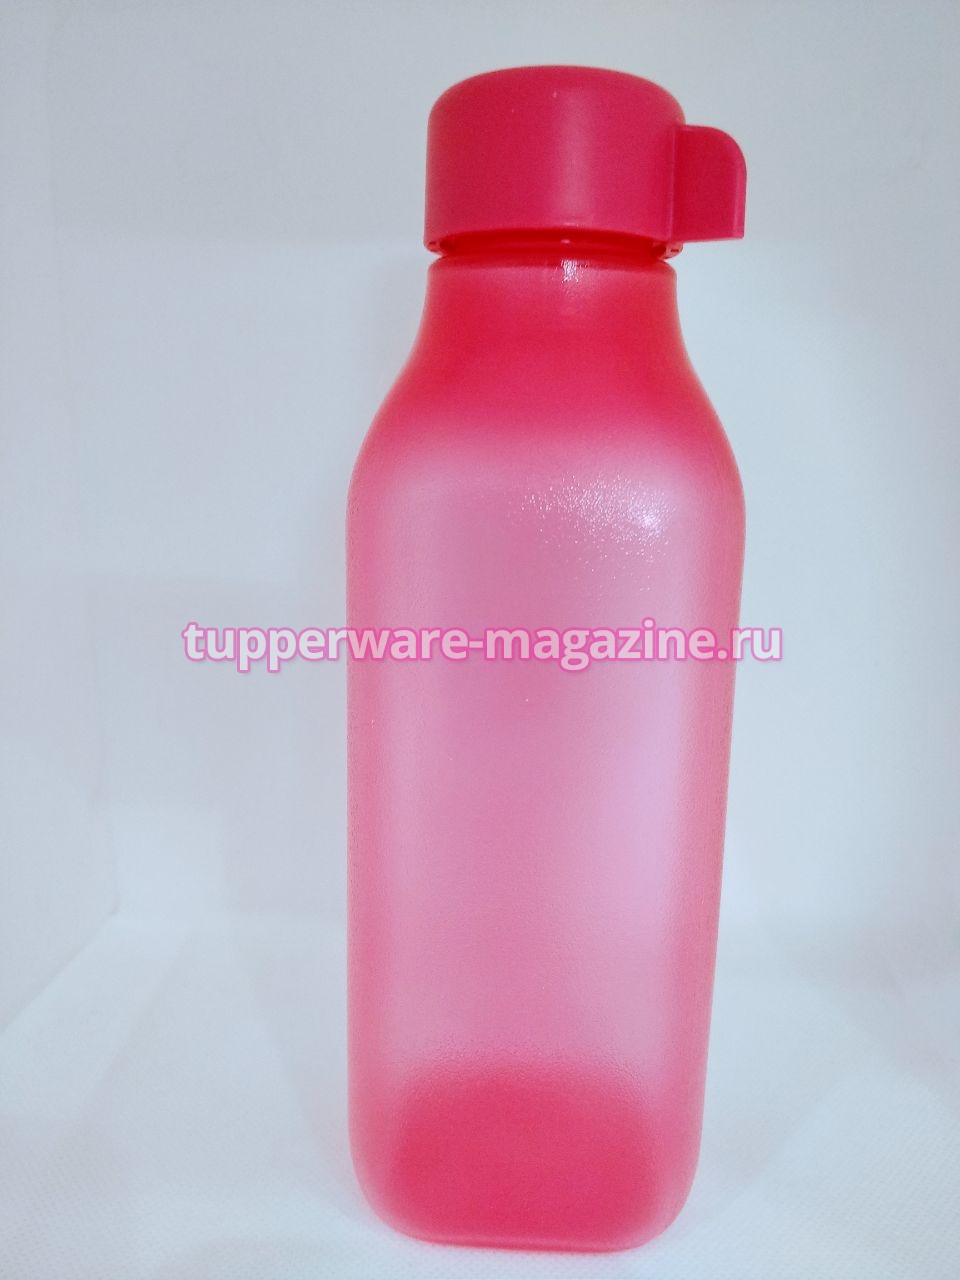 Эко-бутылка (500 мл) квадратная в розовом цвете без клапана